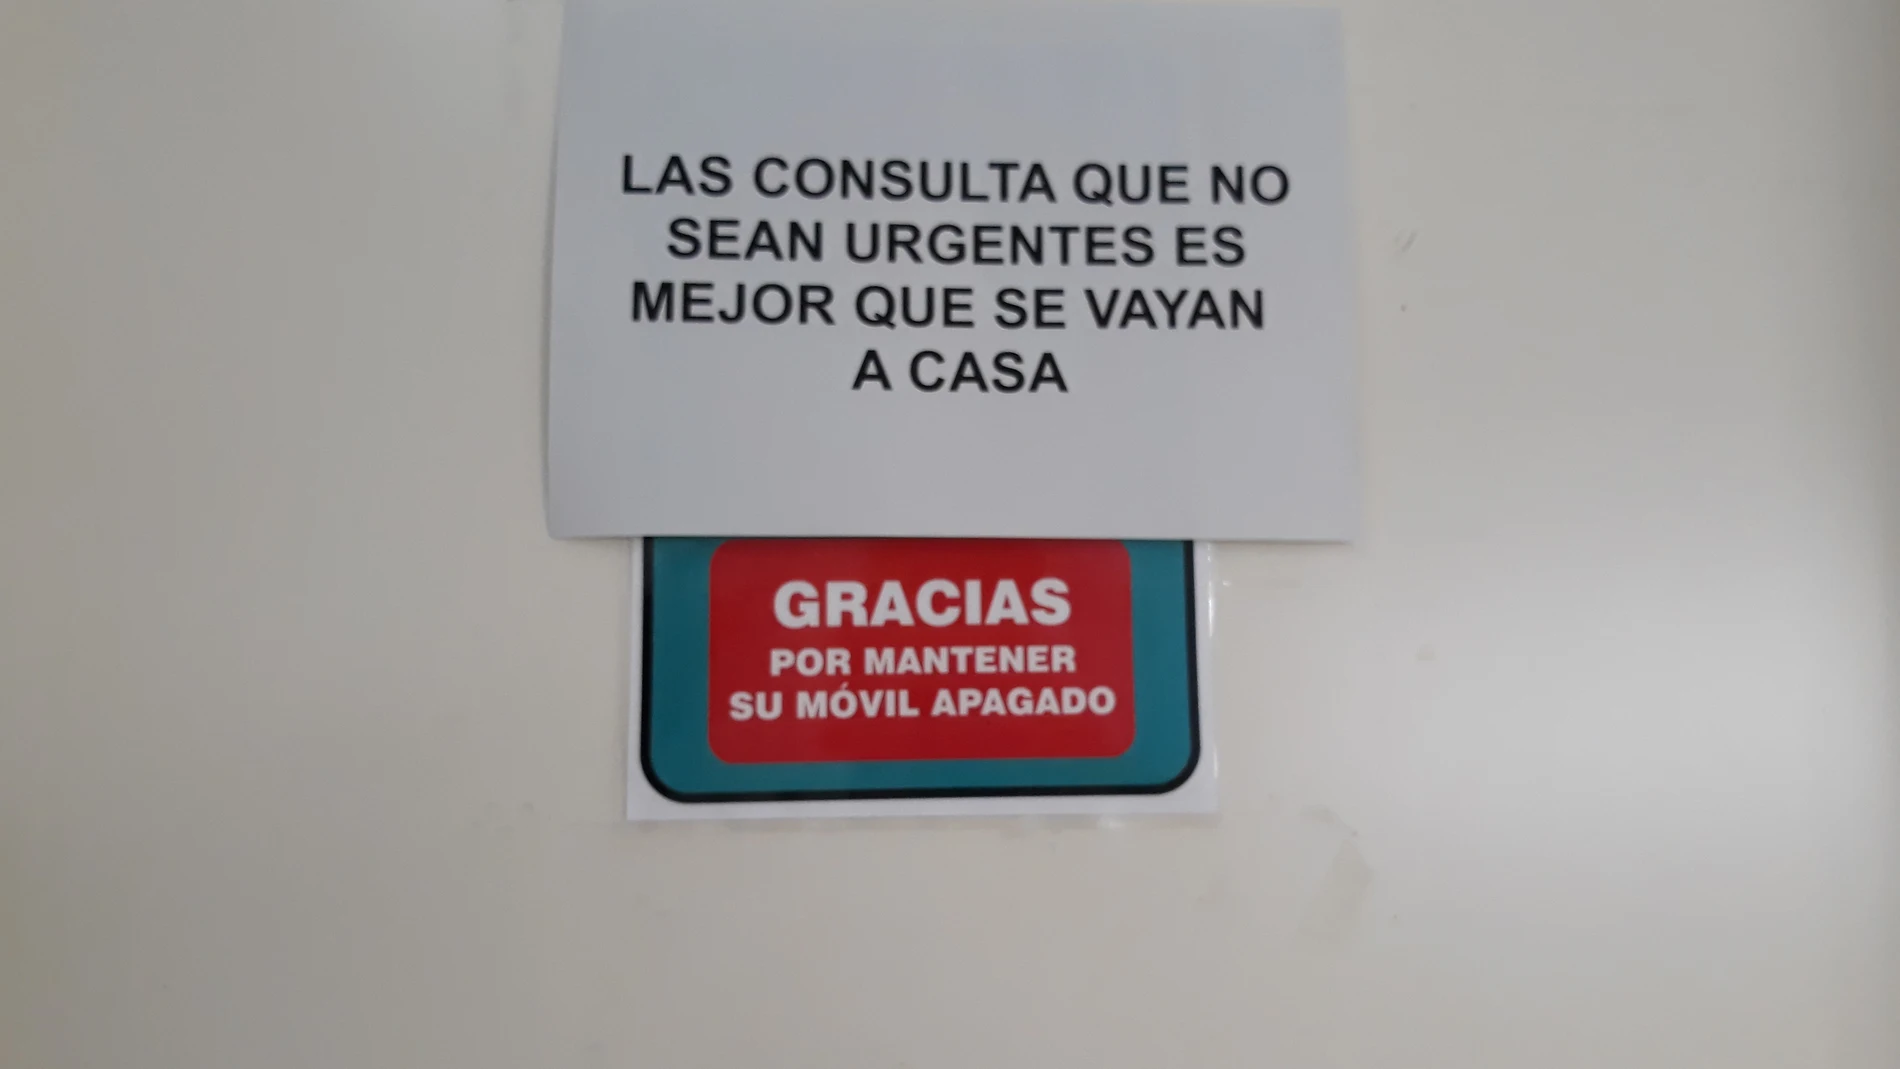 Coronavirus.- Zaragoza.- Los centros de salud recomiendan a los usuarios de consultas no urgentes que "se vayan a casa"